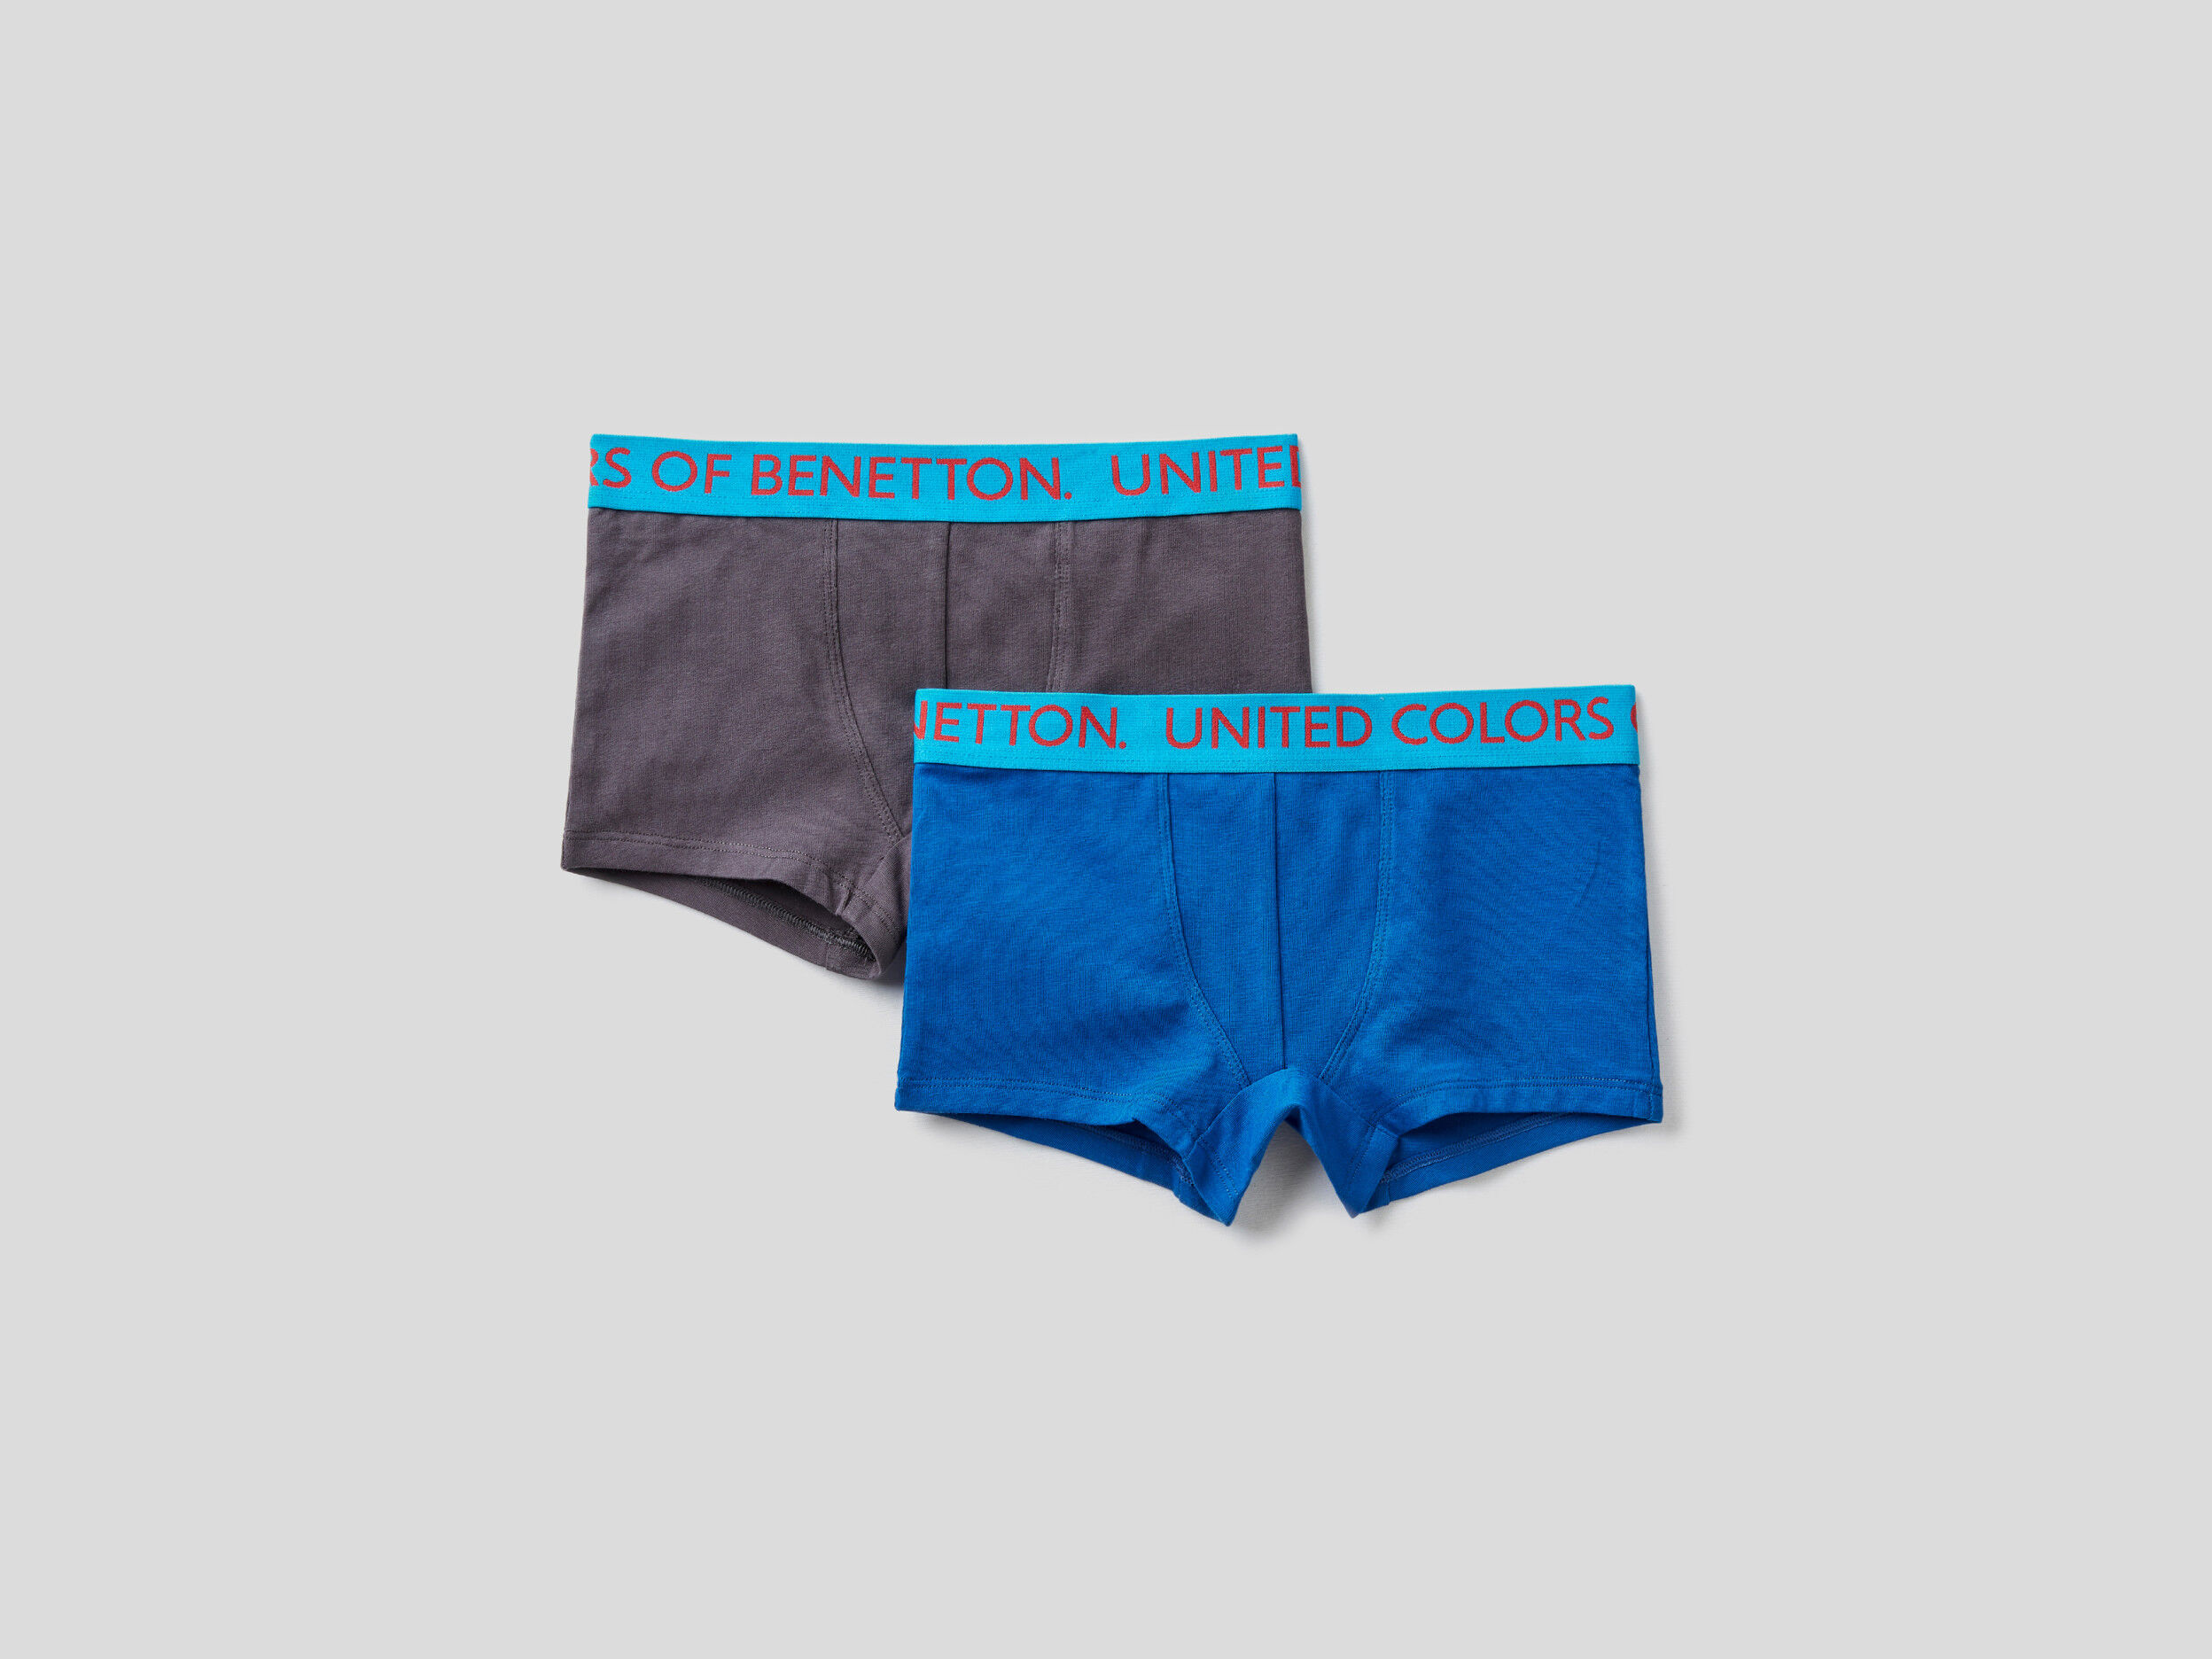 United Colors of Benetton Bambino Abbigliamento Intimo Boxer shorts Boxer shorts aderenti Due Boxer Con Elastico Logato 